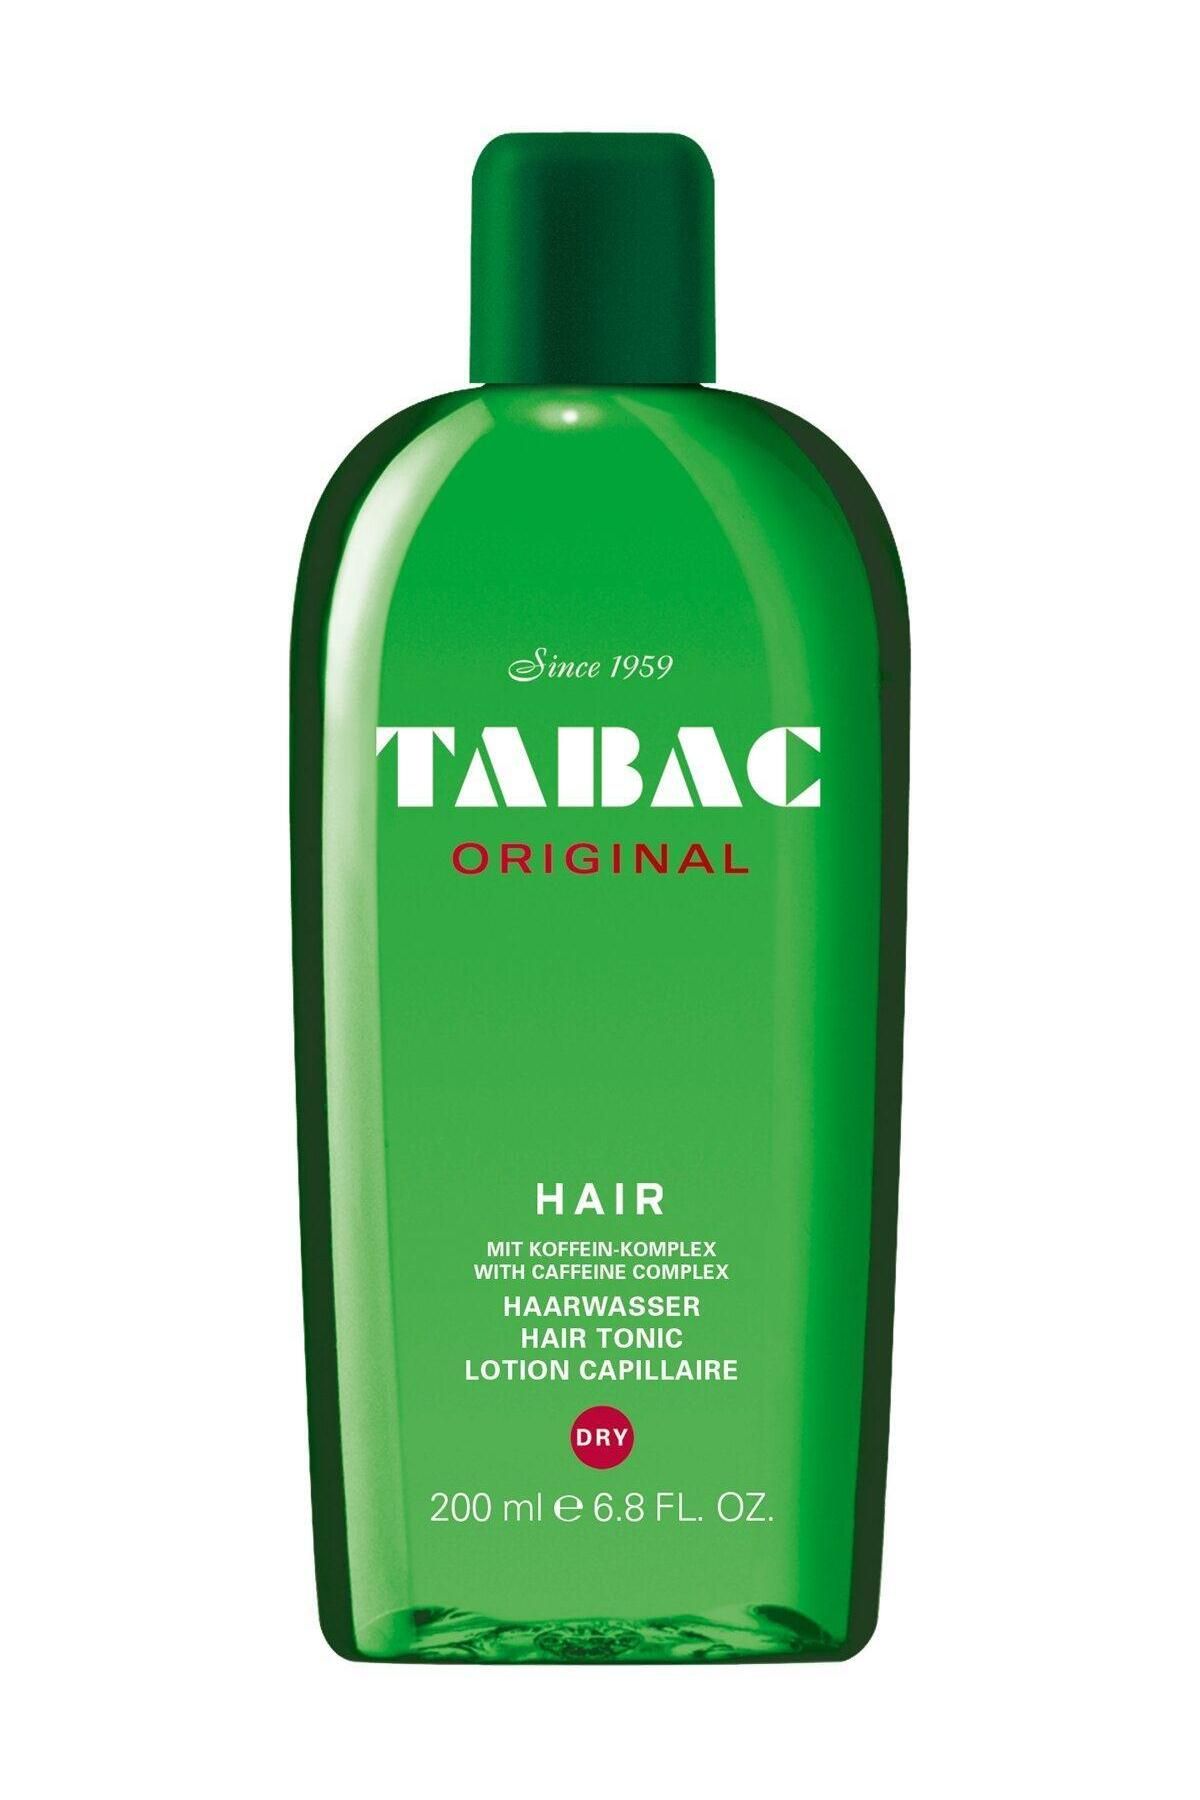 Tabac Original Hair Lotion Dry 200 ml